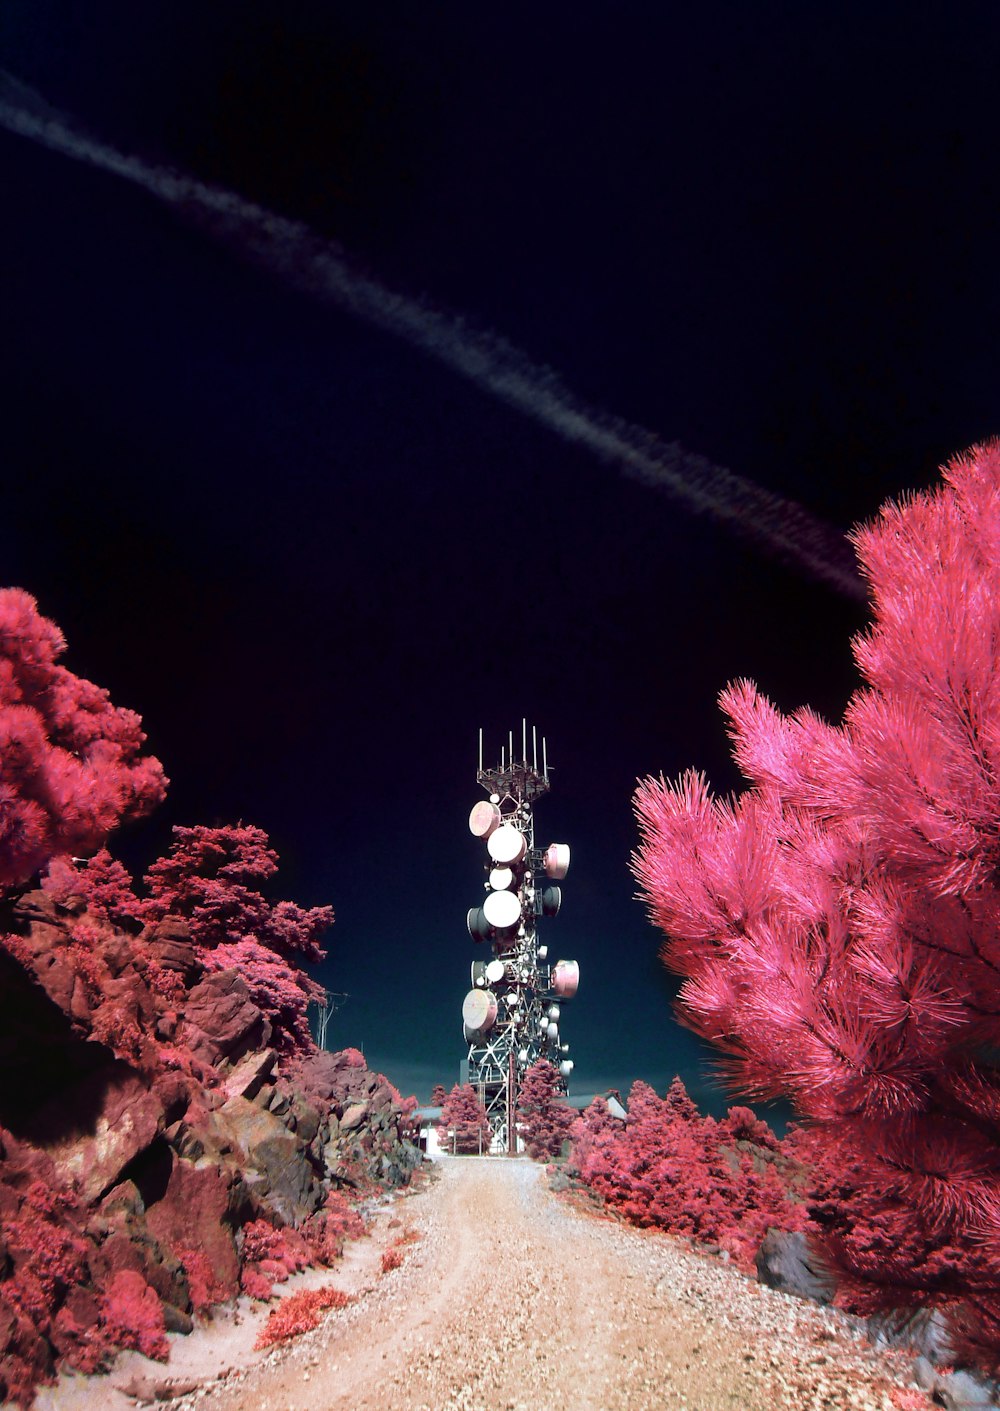 ピンクの木々と衛星塔に囲まれた道路